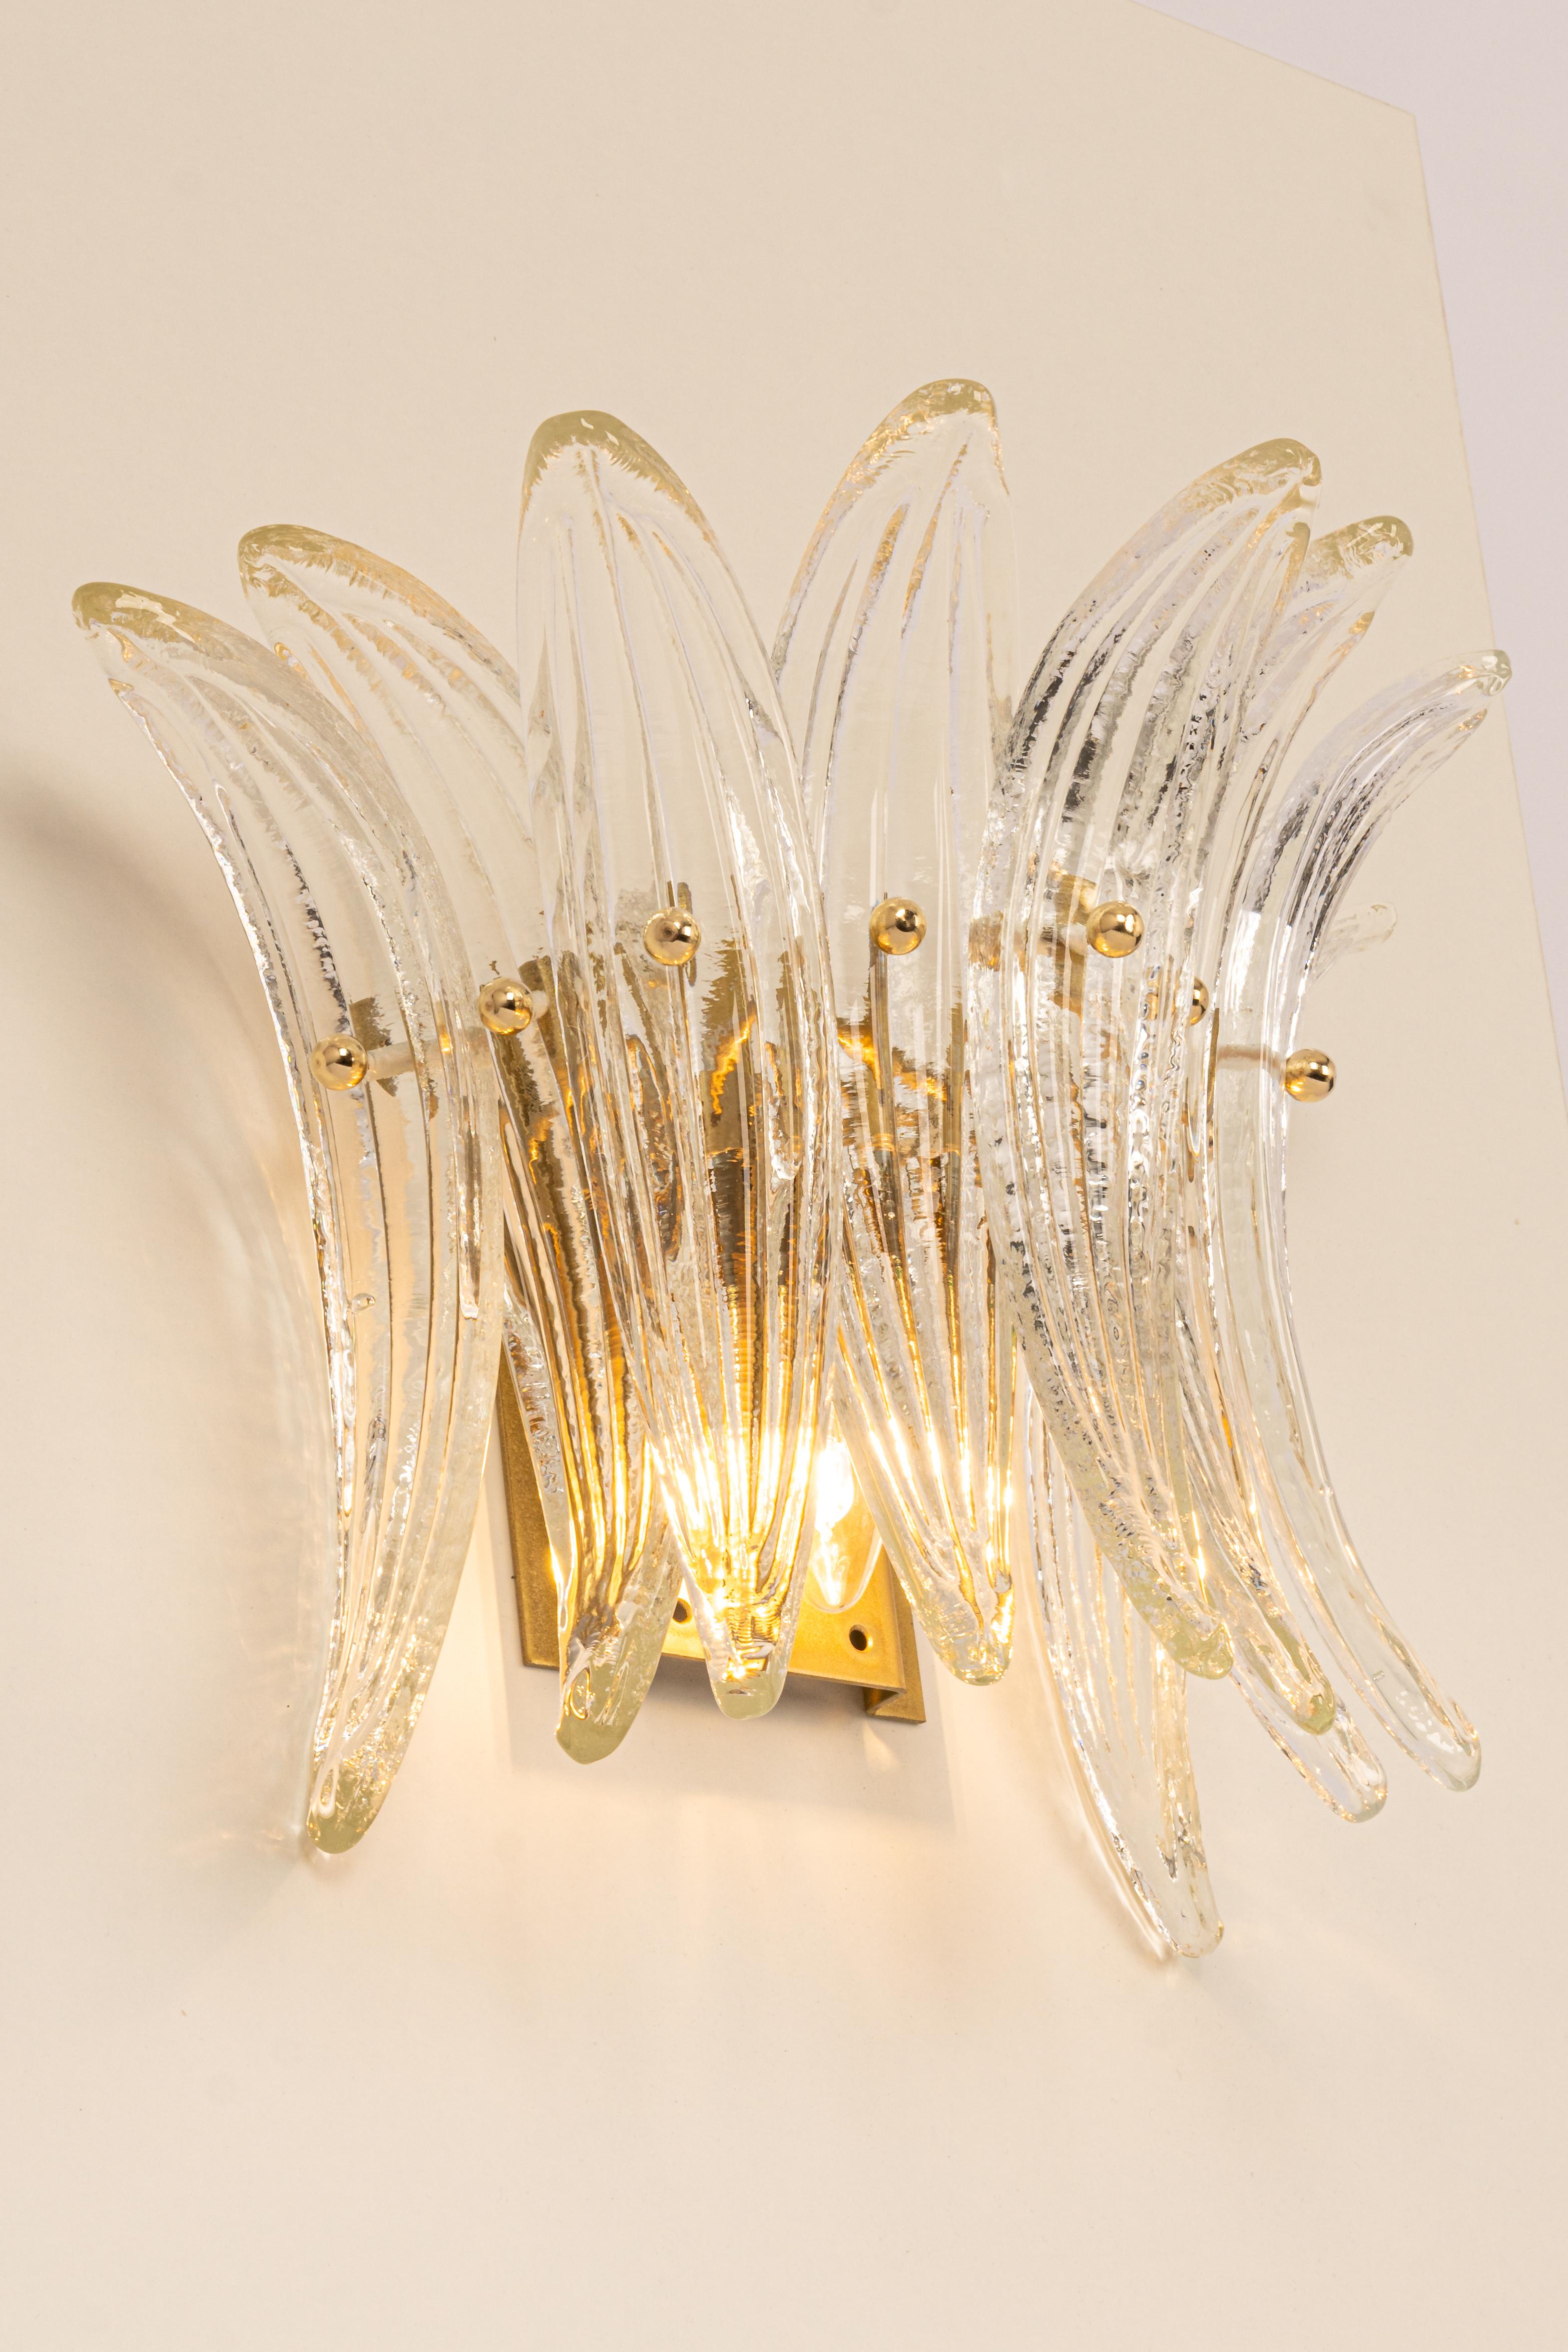 Fantastisches Paar Wandleuchten aus der Mitte des Jahrhunderts mit Murano-Glasstücken in jeder Lampe, hergestellt von Kalmar, Österreich, ca. 1970-1979.
Großartige geometrische Form.
Serie: Palmette

Jede Leuchte benötigt eine kleine E14-Birne.